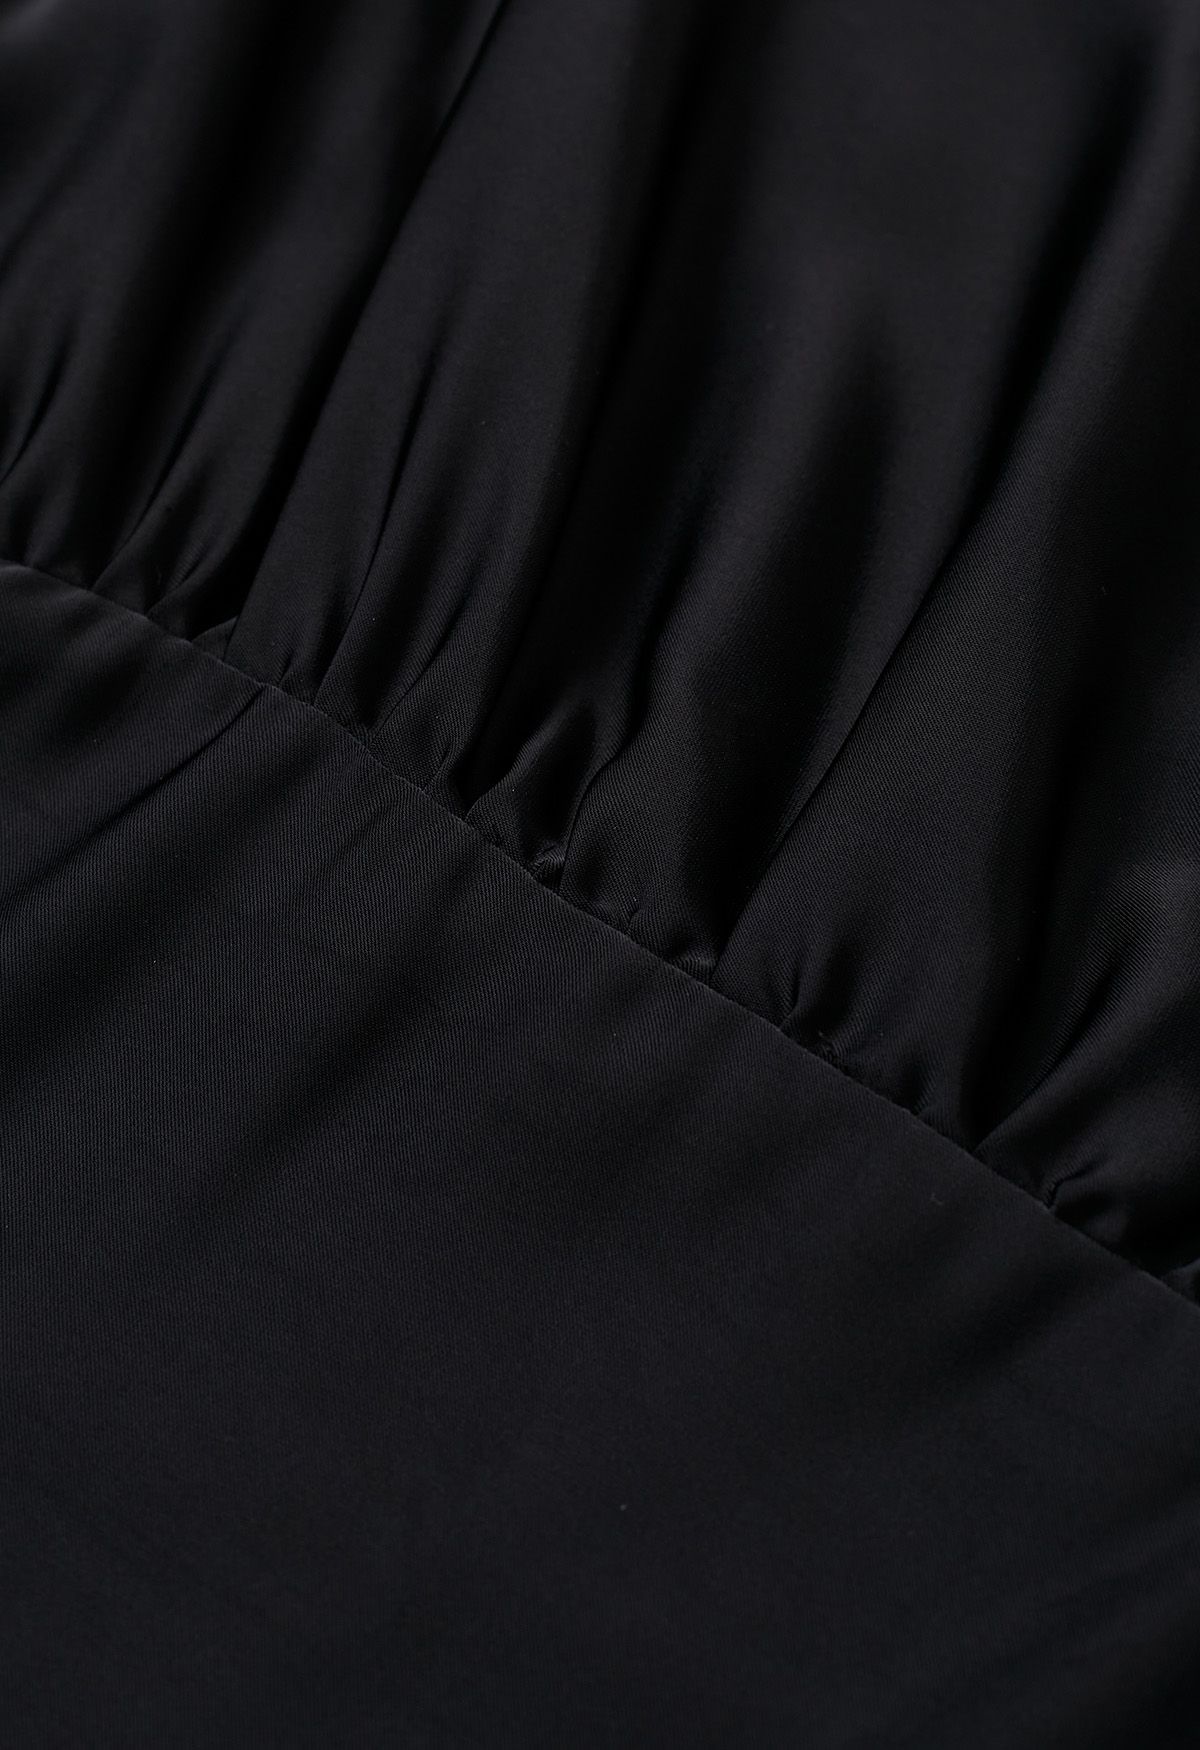 فستان طويل من الساتان بأكمام قصيرة وخصر ملفوف باللون الأسود